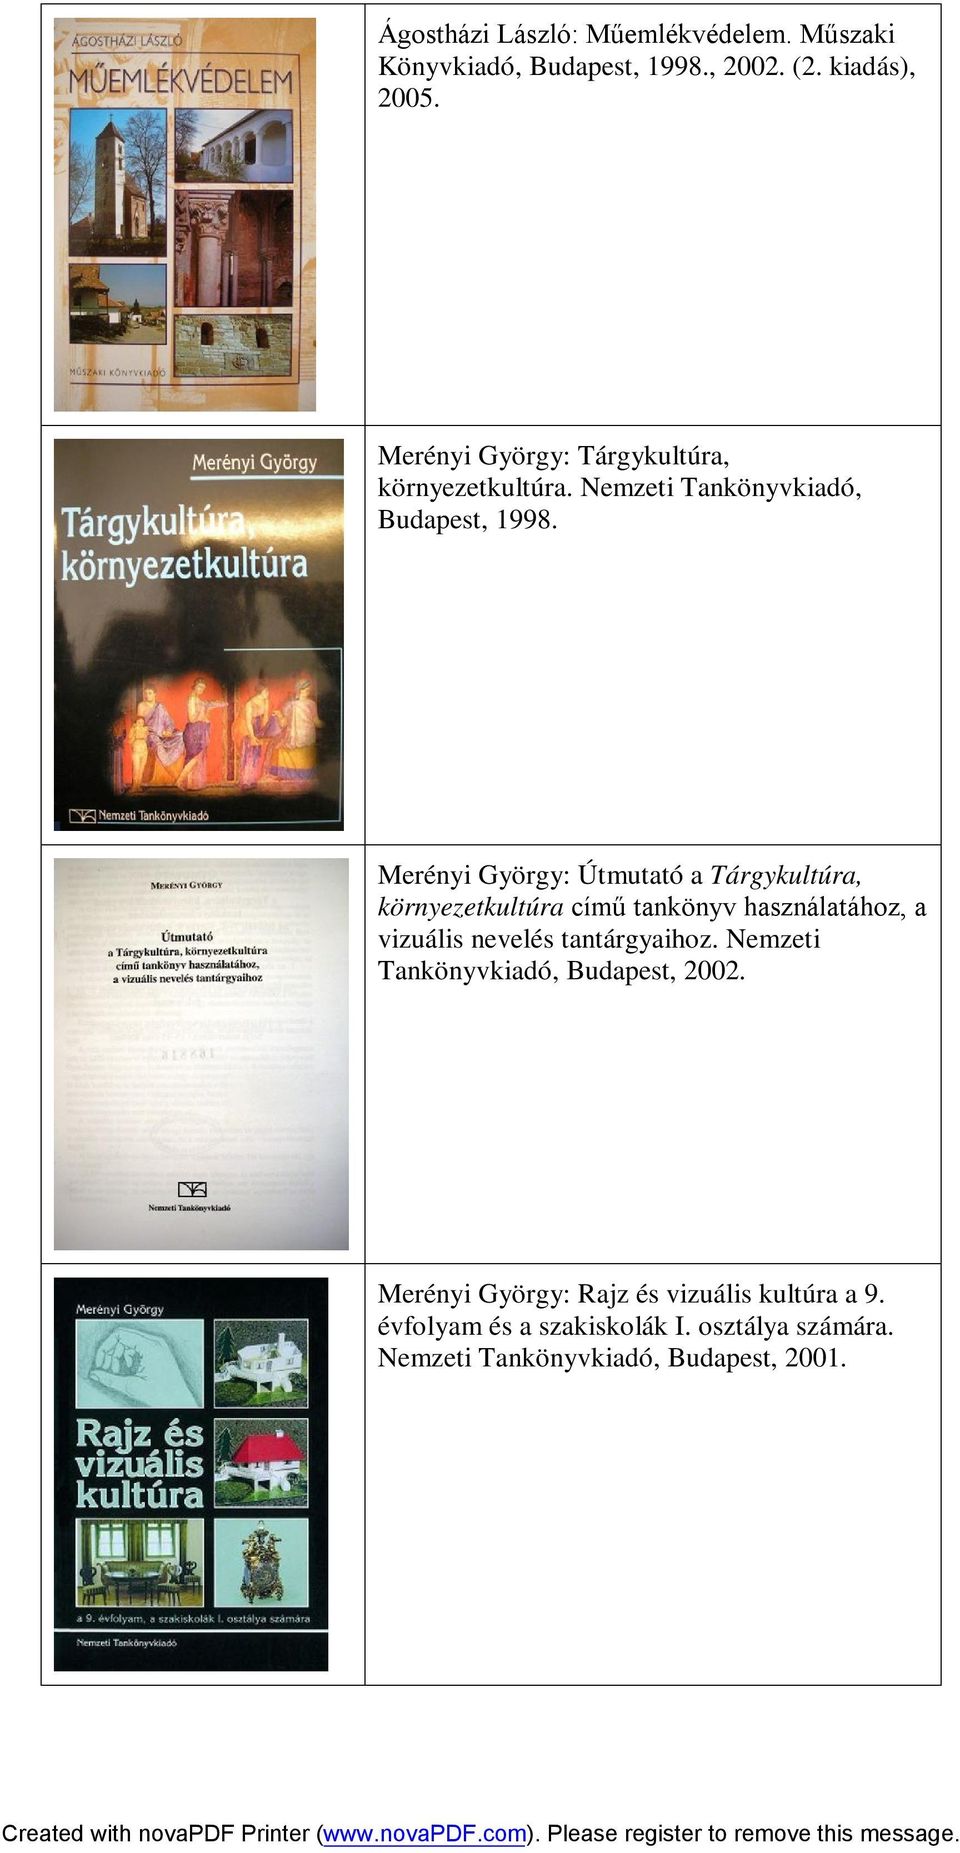 Merényi György: Útmutató a Tárgykultúra, környezetkultúra című tankönyv használatához, a vizuális nevelés